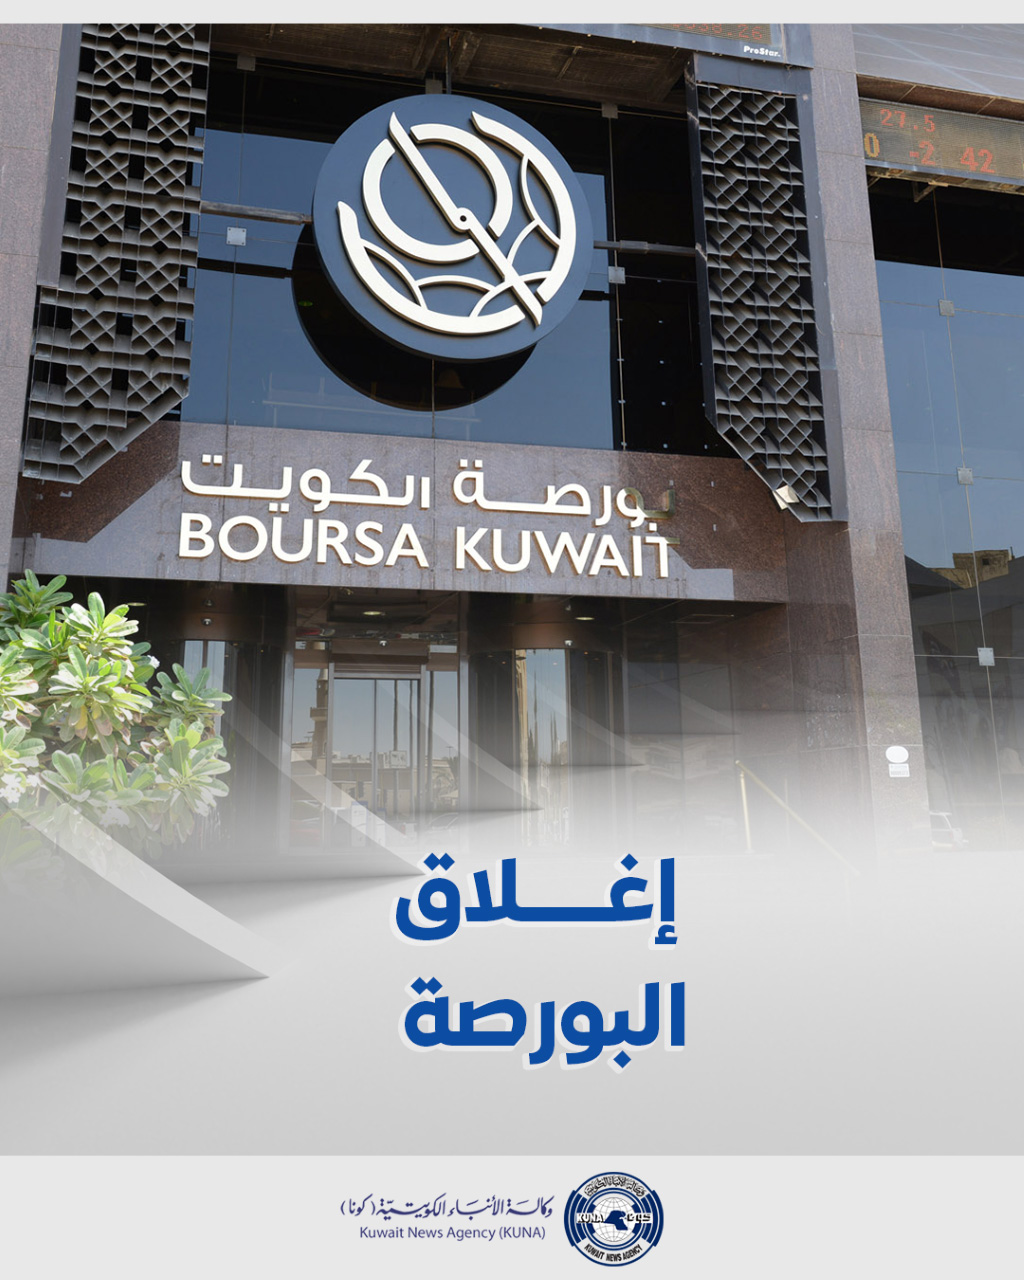 بورصة الكويت تغلق تعاملاتها على انخفاض مؤشرها العام 50ر46 نقطة ليبلغ 37ر6859 بنسبة 67ر0 في المئة                                                                                                                                                          